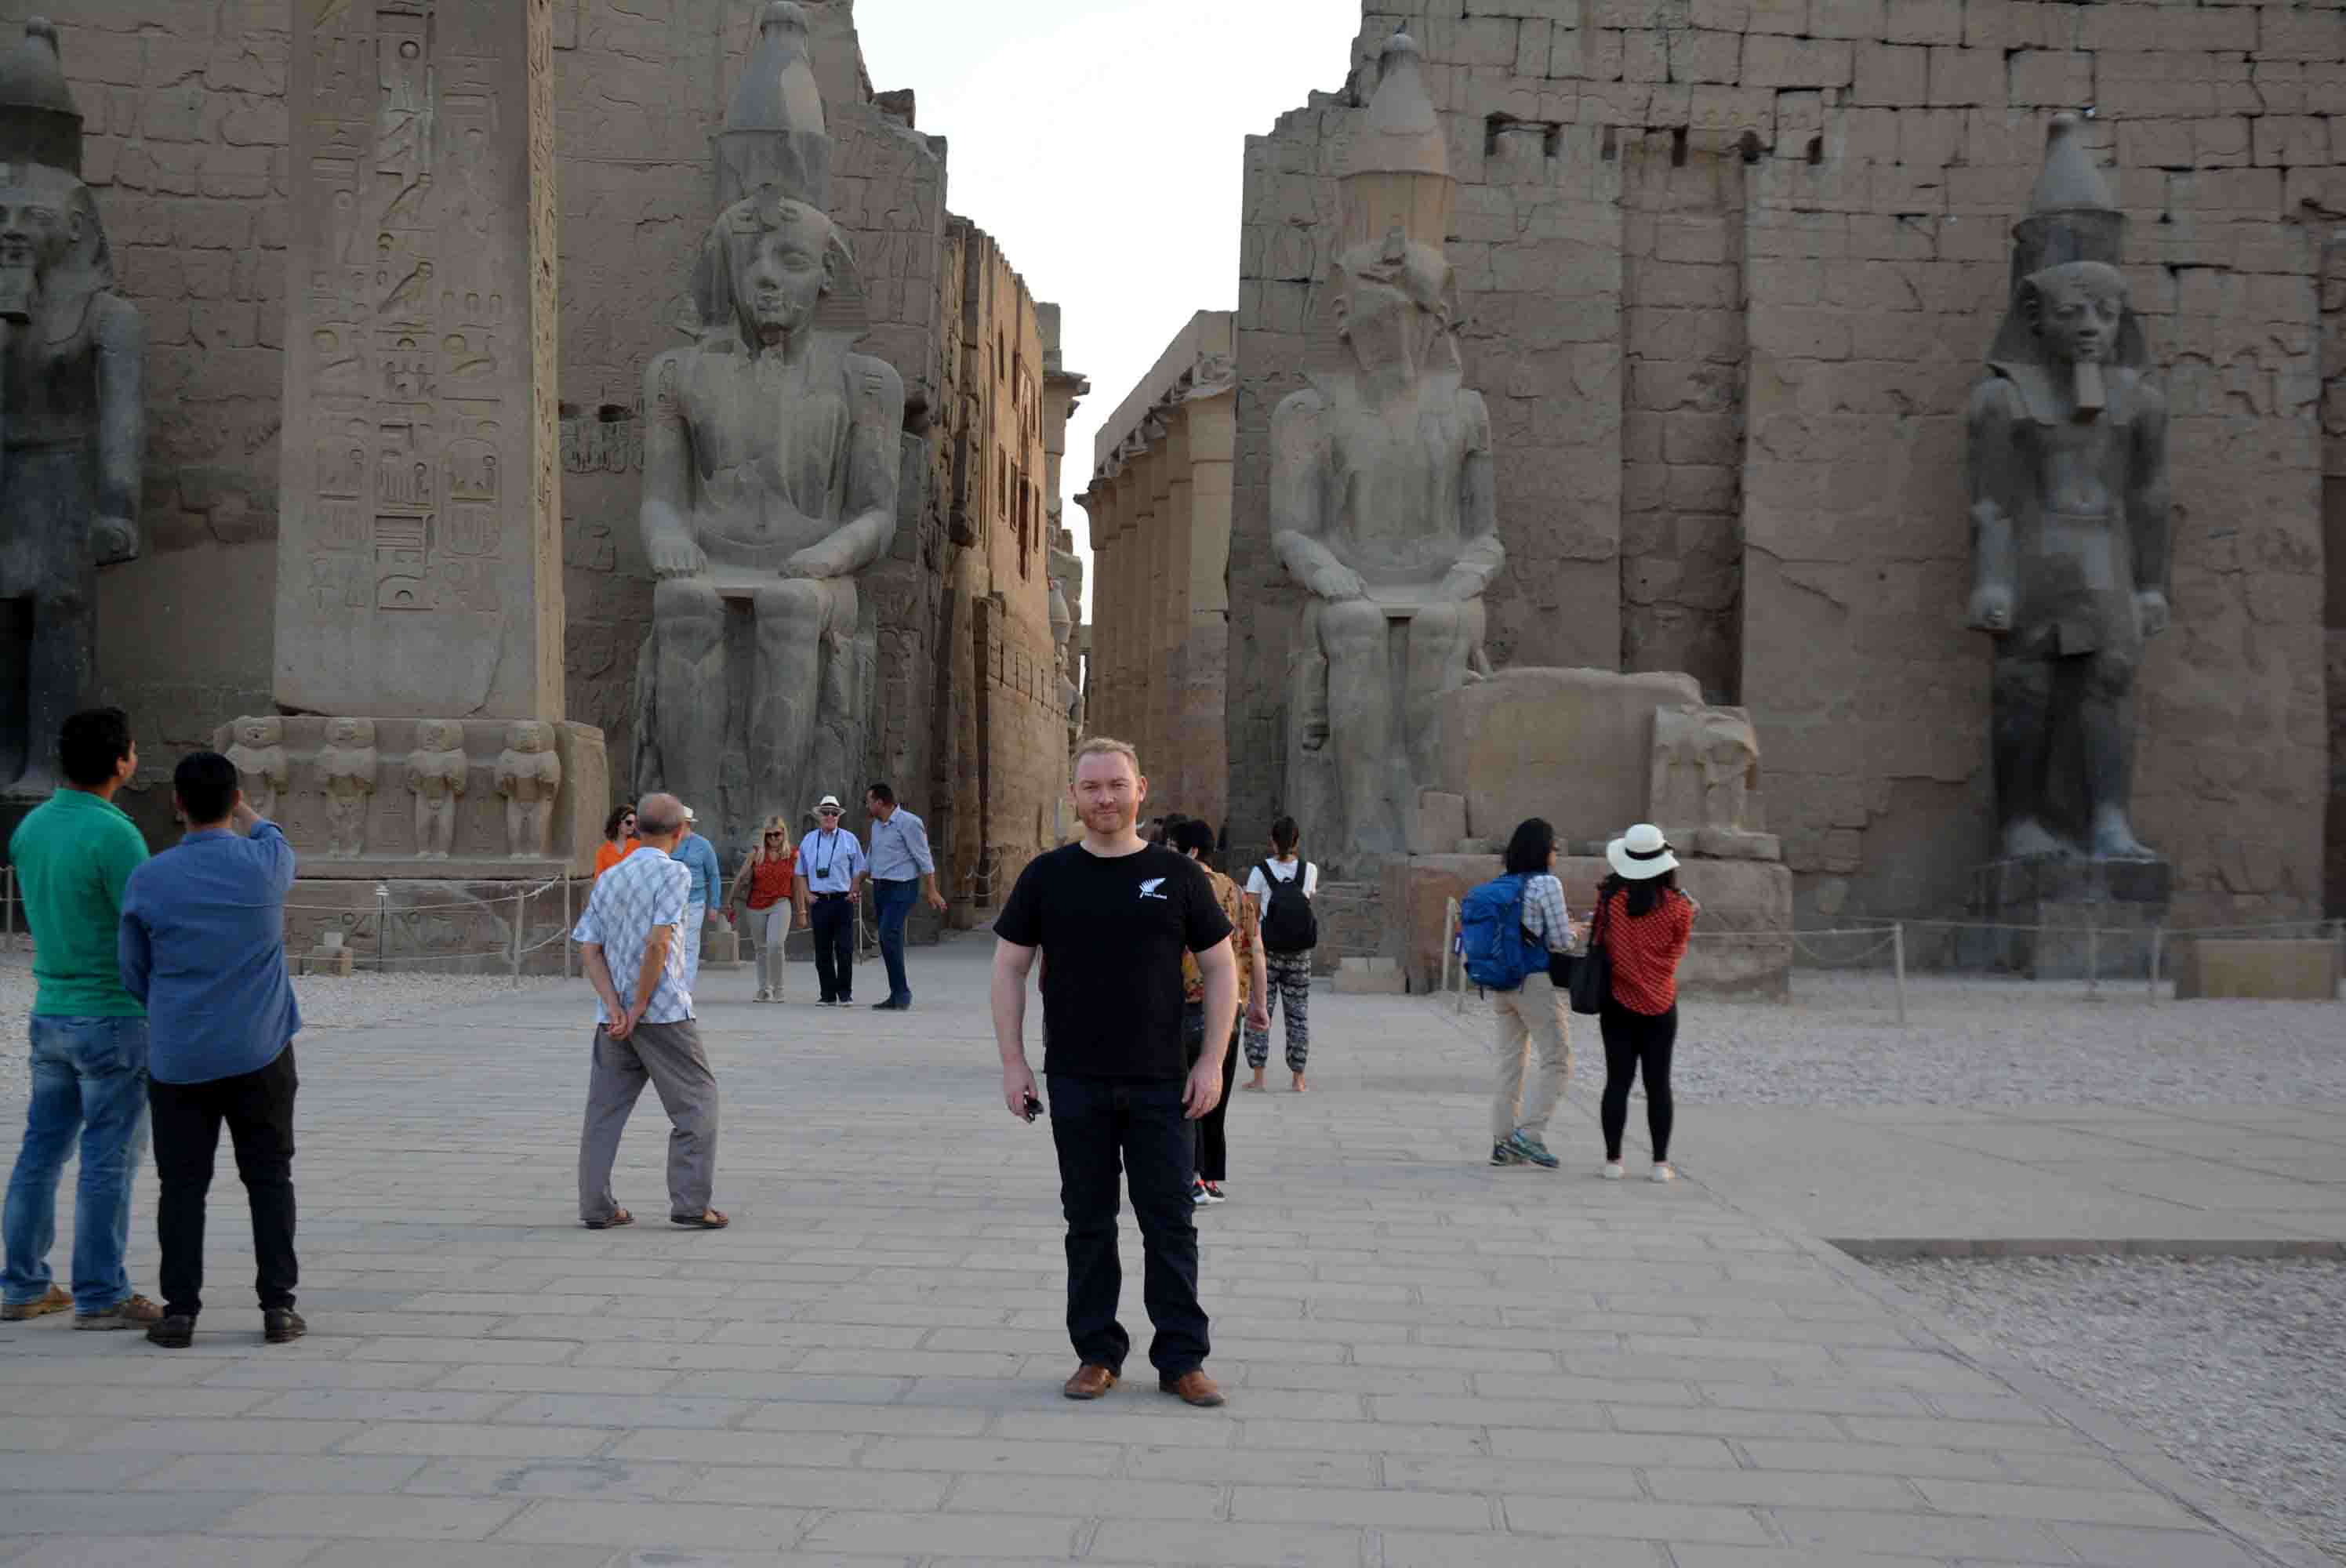 سفير نيوزلندا بالقاهرة يواصل جولاته السياحية بمعابد ومقابر الأقصر الفرعونية (1)